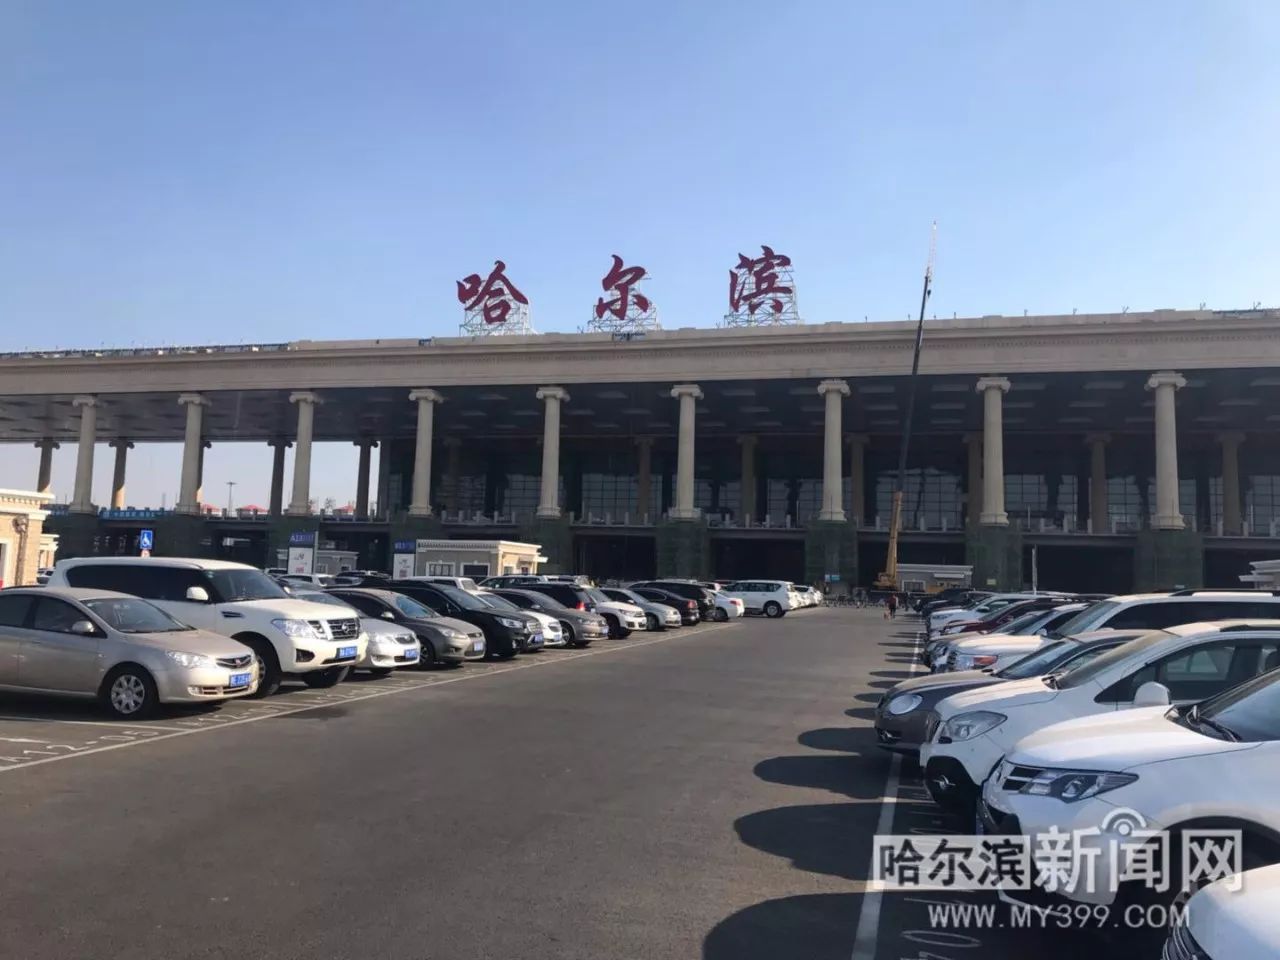 【新闻】建了这么久,哈尔滨太平机场t2航站楼有望年底投用丨场外输电